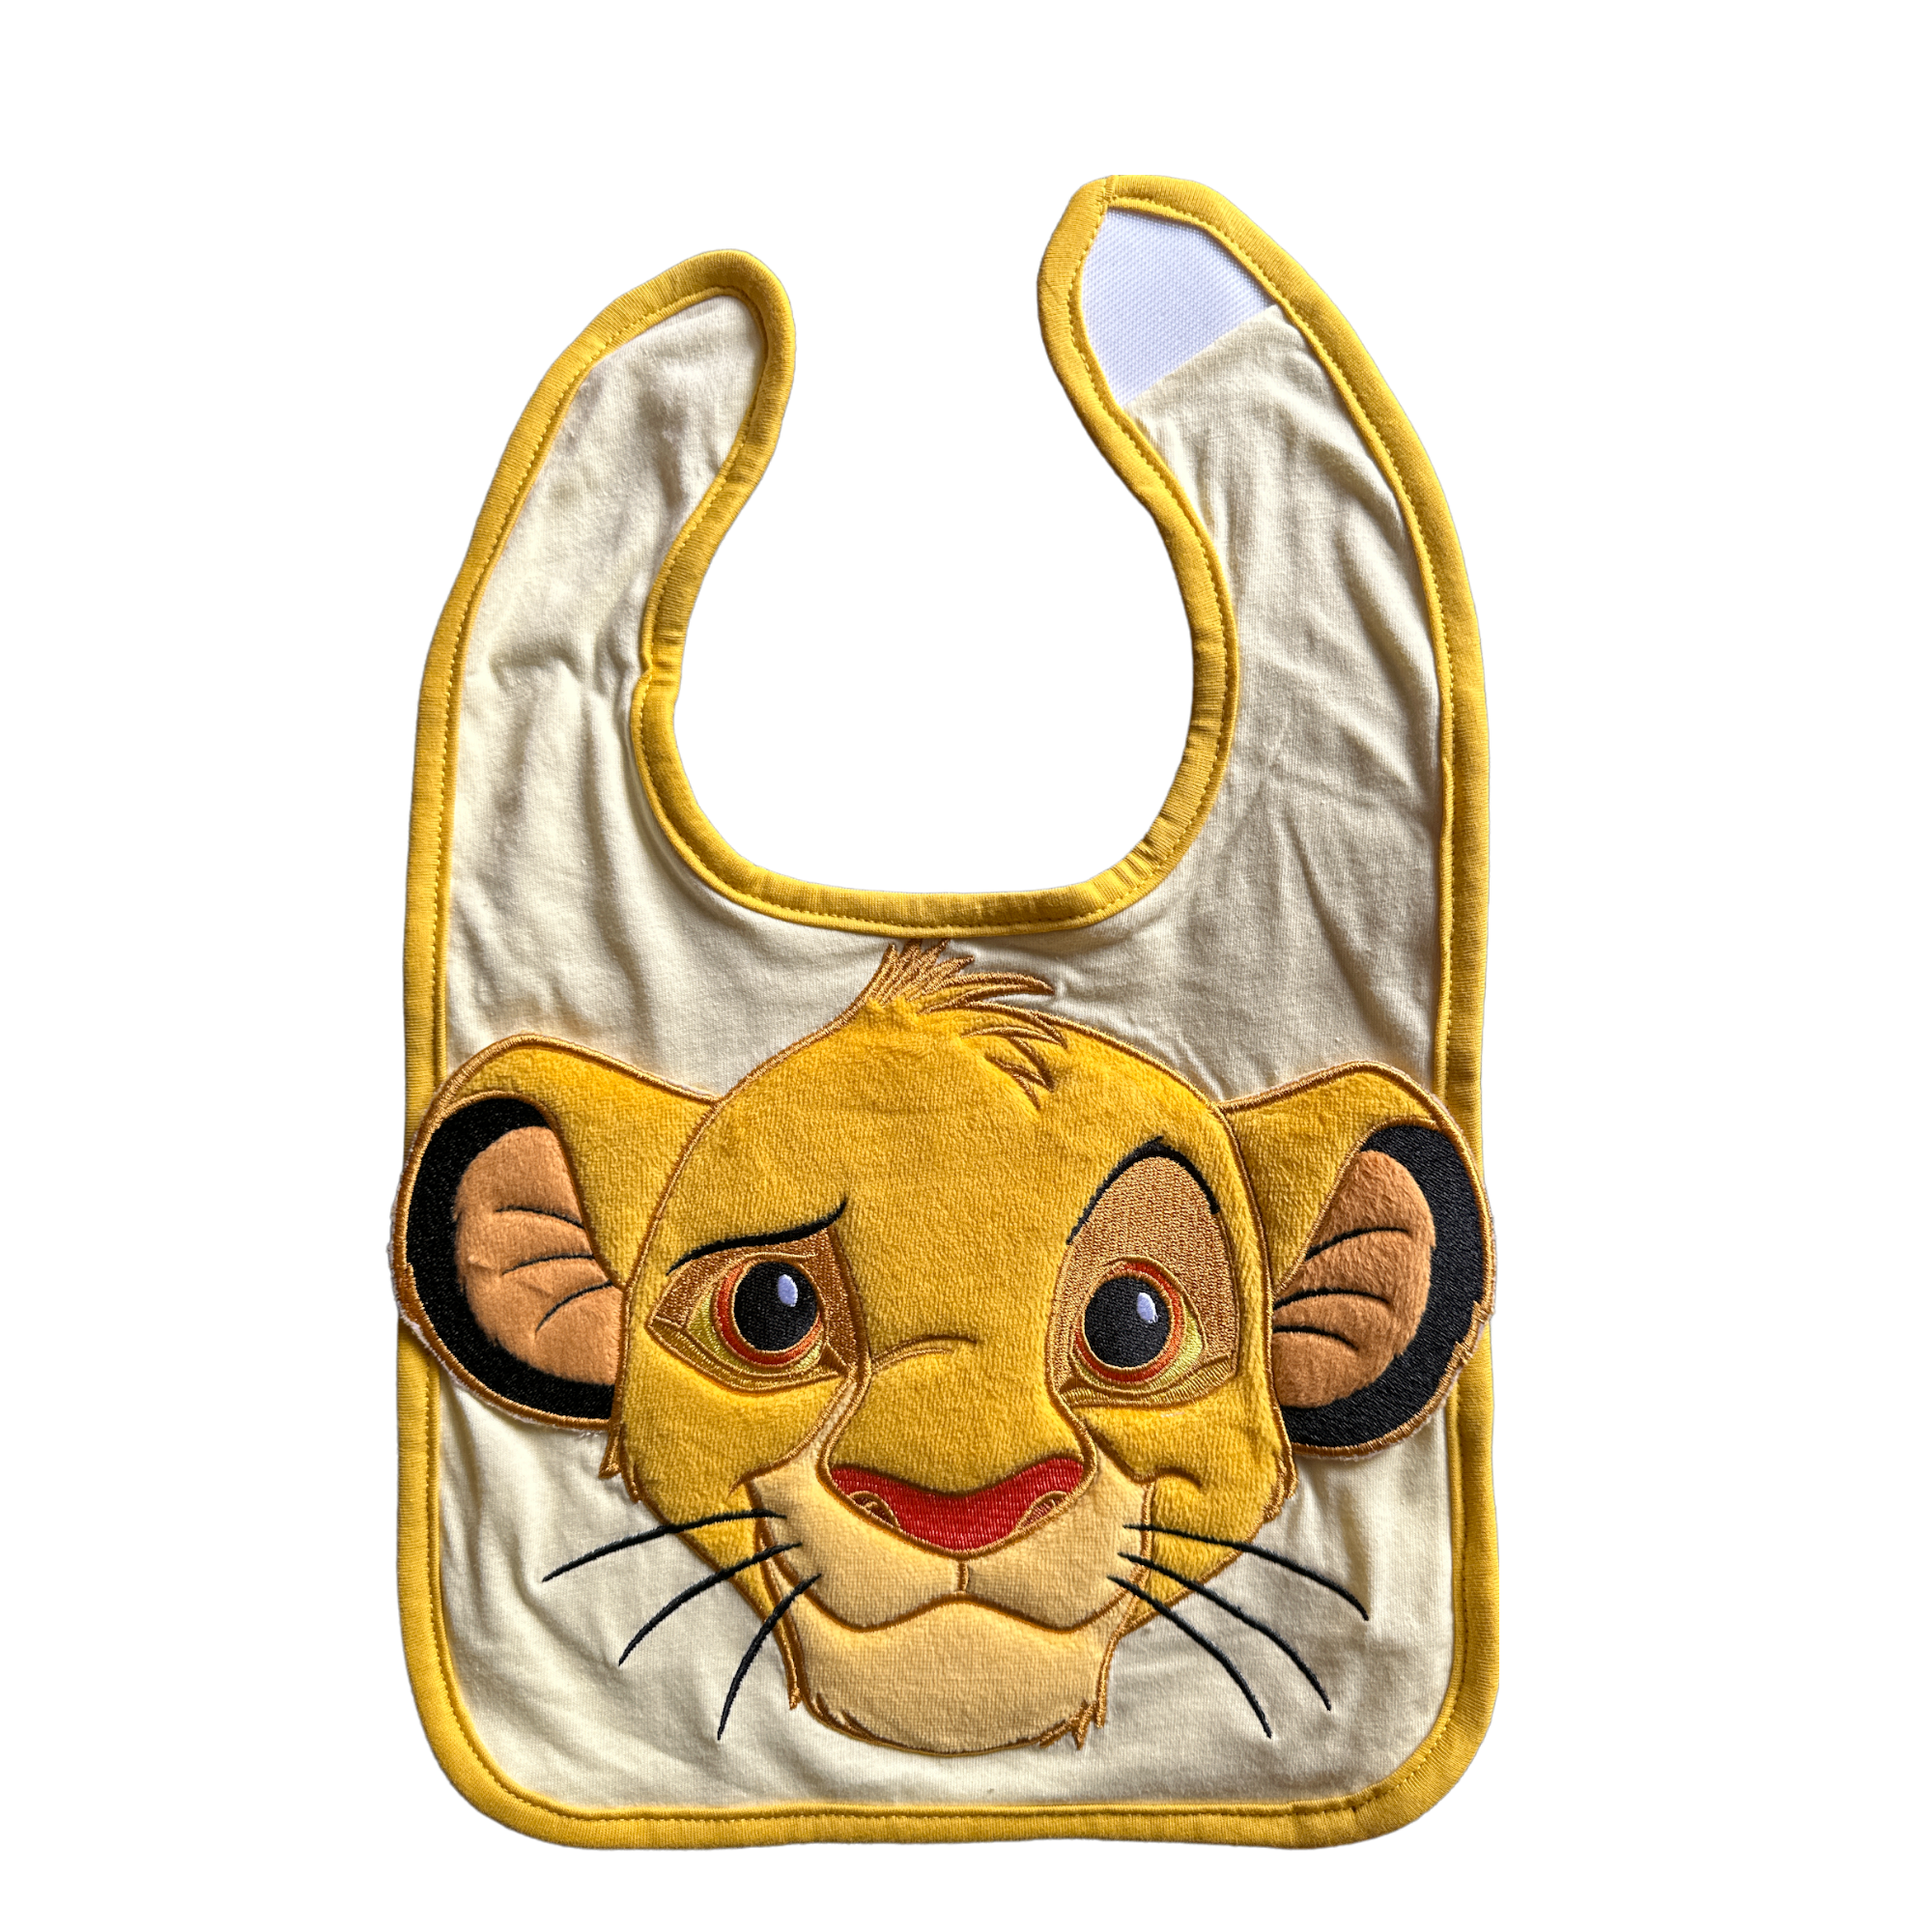 Bonnet Trappeur Simba Le Roi Lion Disney sur Logeekdesign